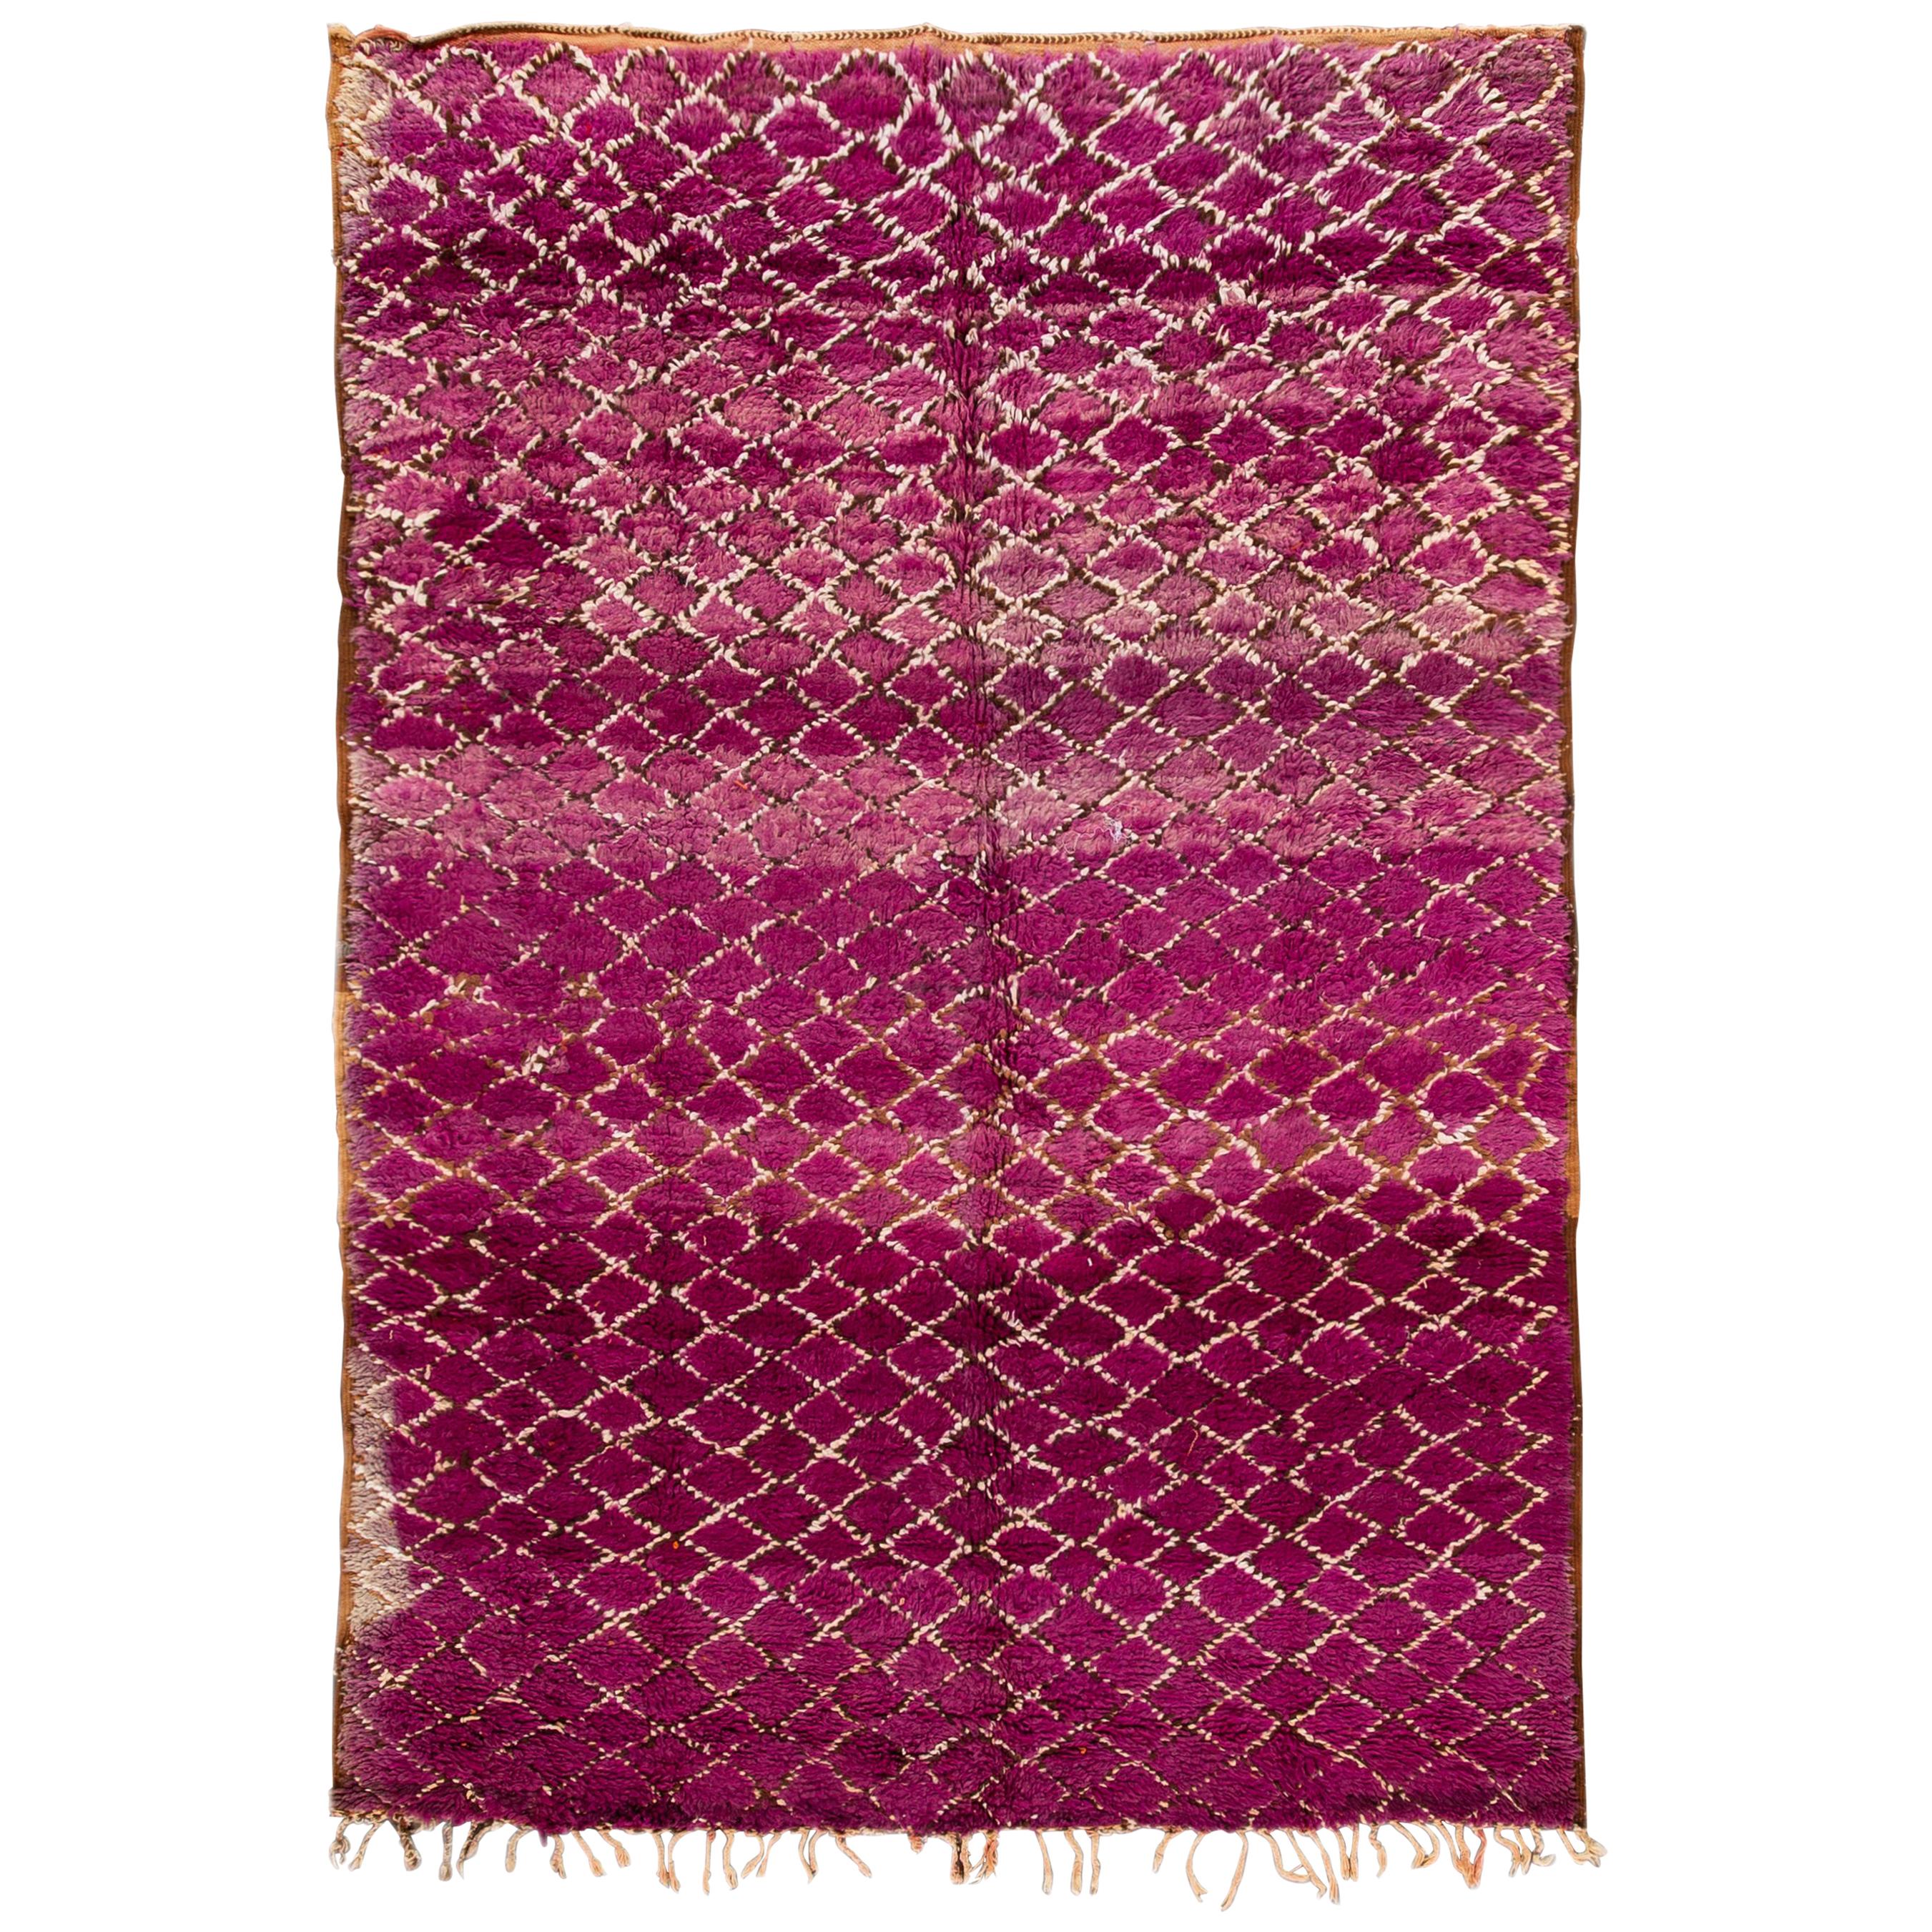 Tapis en laine tribale marocaine violette du milieu du 20e siècle